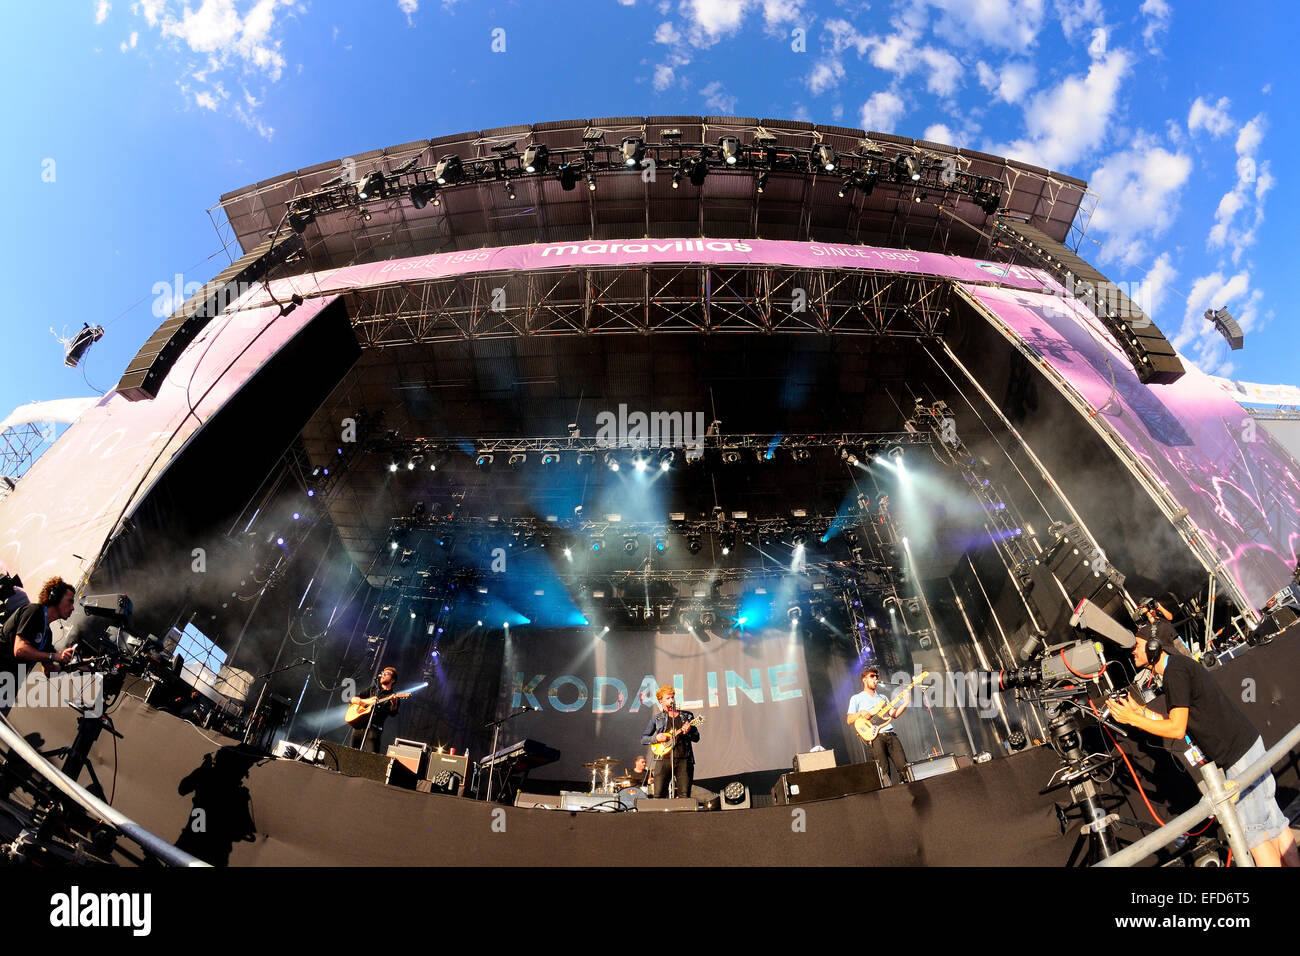 BENICASSIM, Spanien - 20 Juli: Kodaline (irische Rockband) führt auf FIB Festival am 20. Juli 2014 in Benicassim, Spanien. Stockfoto